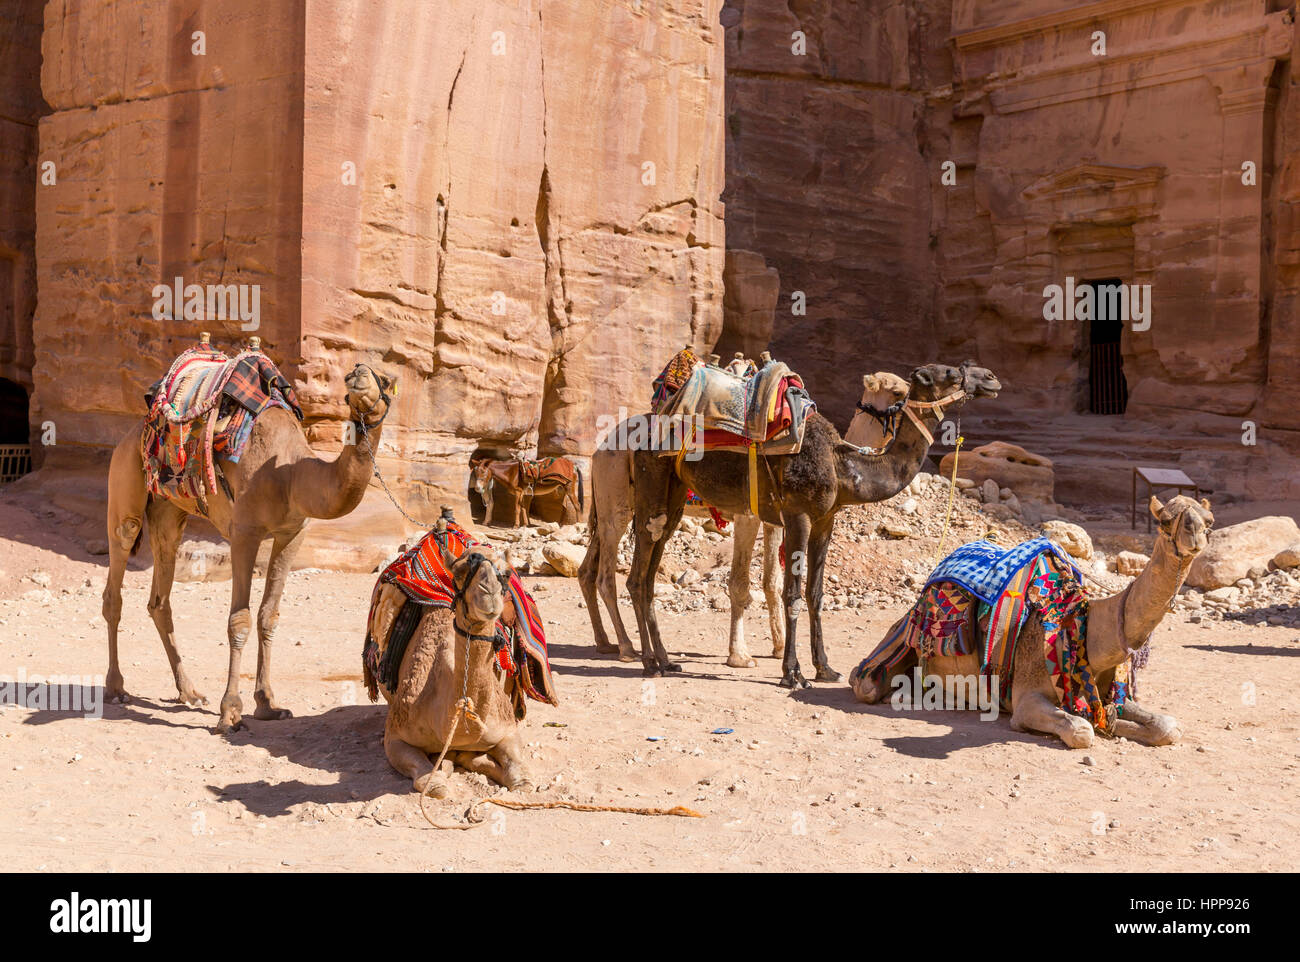 Jordan, Petra, waiting camels Stock Photo